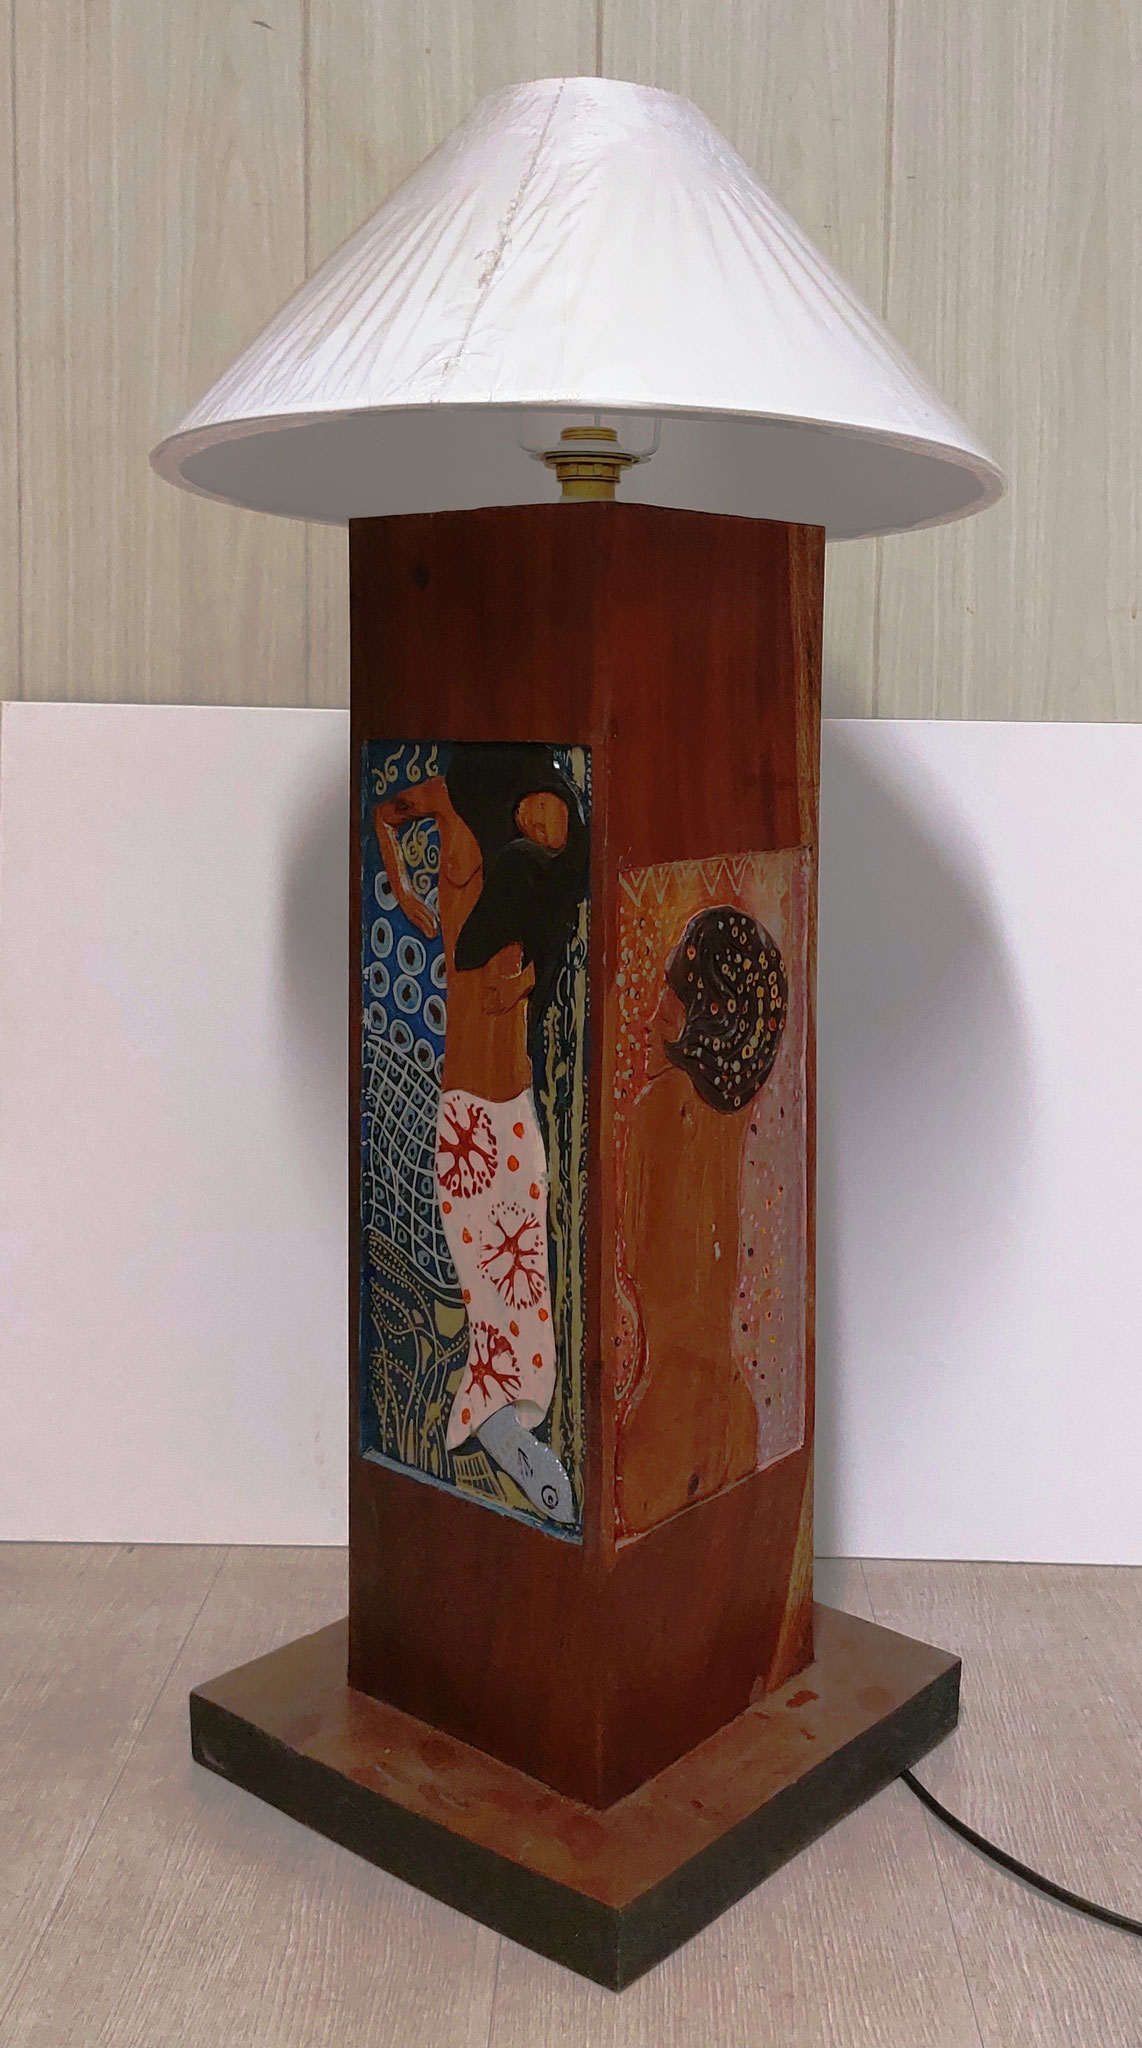 N°87 - PTIT LOUIS - Pied de lampe « Klimt » 2021 - H16 - Peinture sur bois